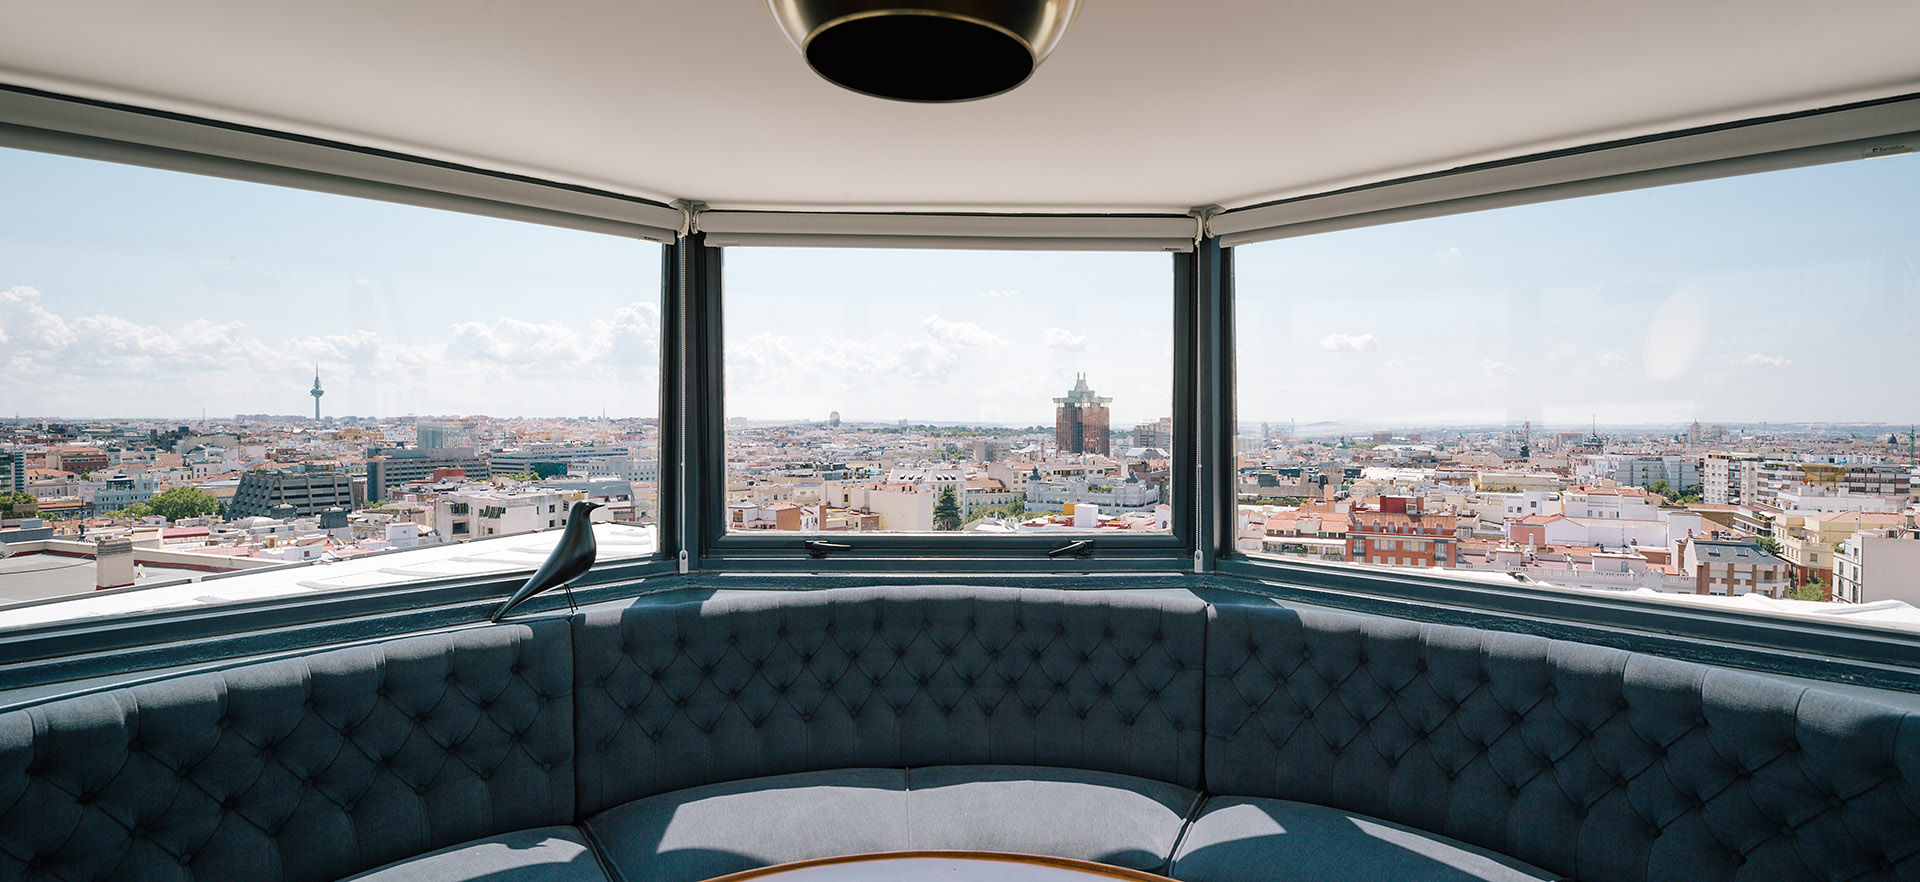 “Un chalet en el cielo de Madrid”, ImagenSubliminal ImagenSubliminal Salas modernas